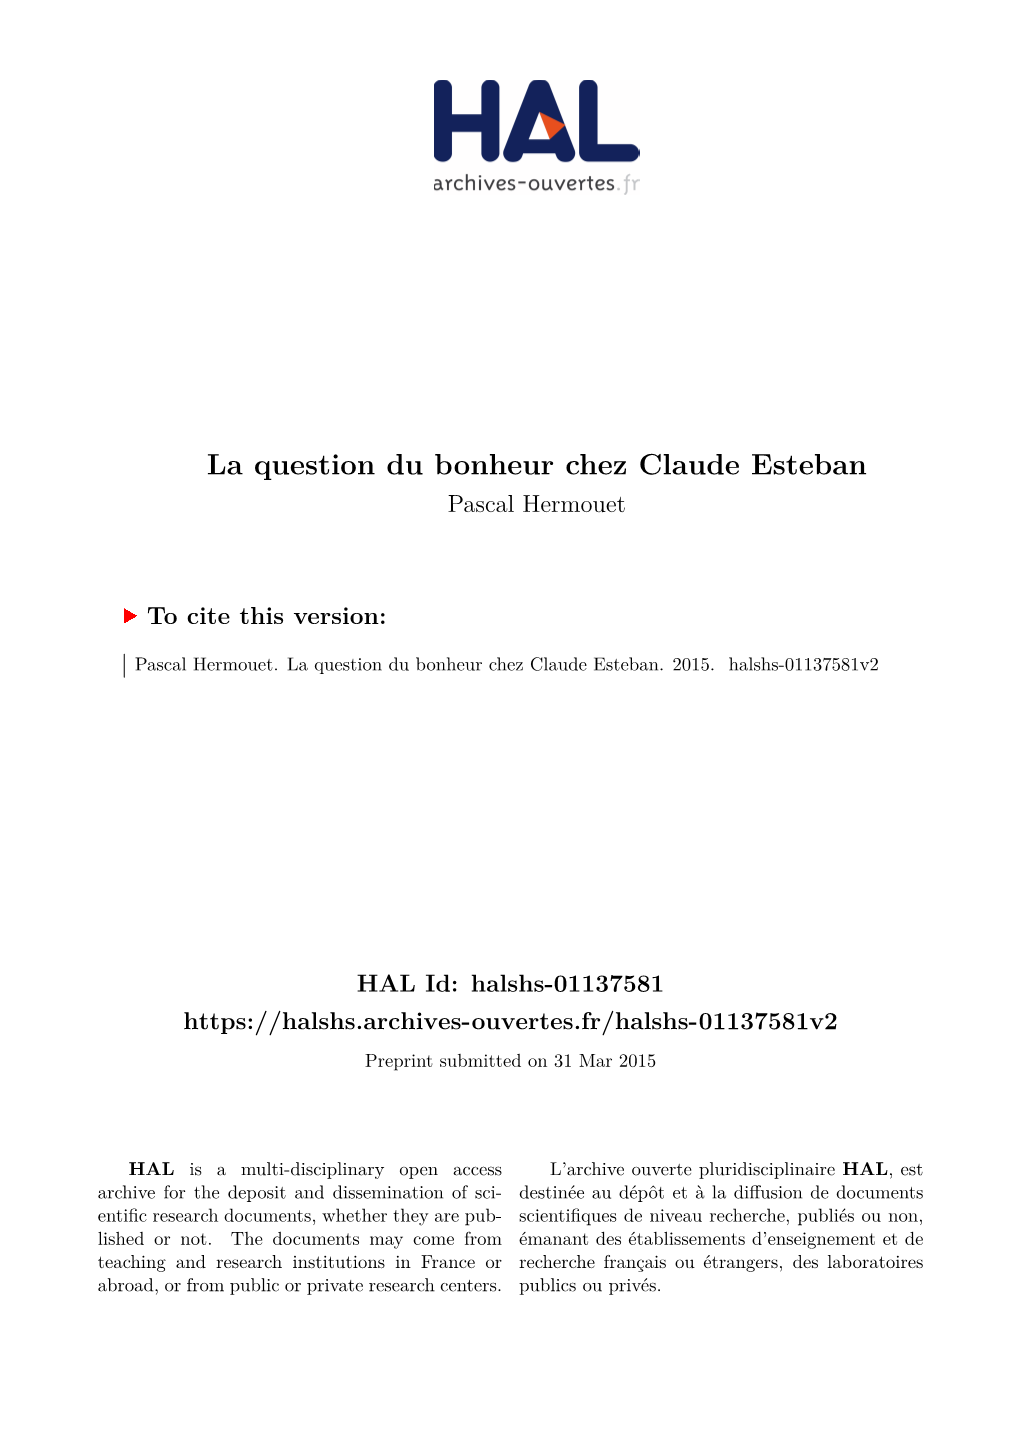 La Question Du Bonheur Chez Claude Esteban Pascal Hermouet